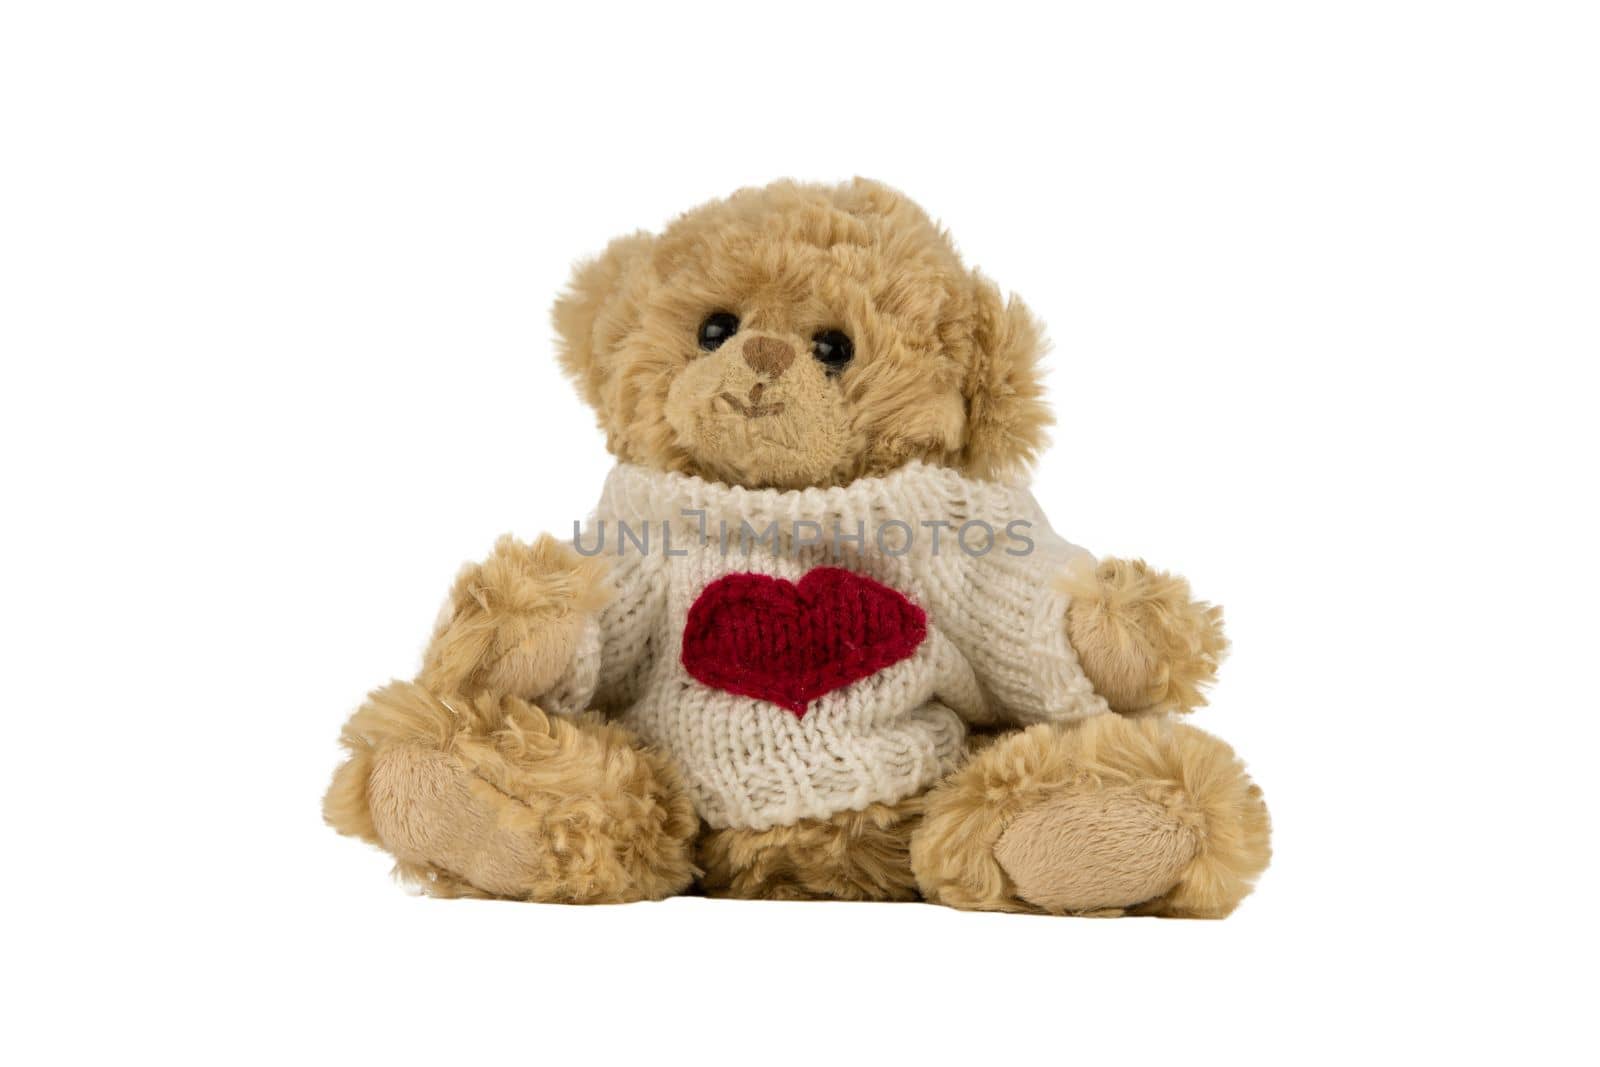 teddy bear with heart on its shirt by Kondrateva